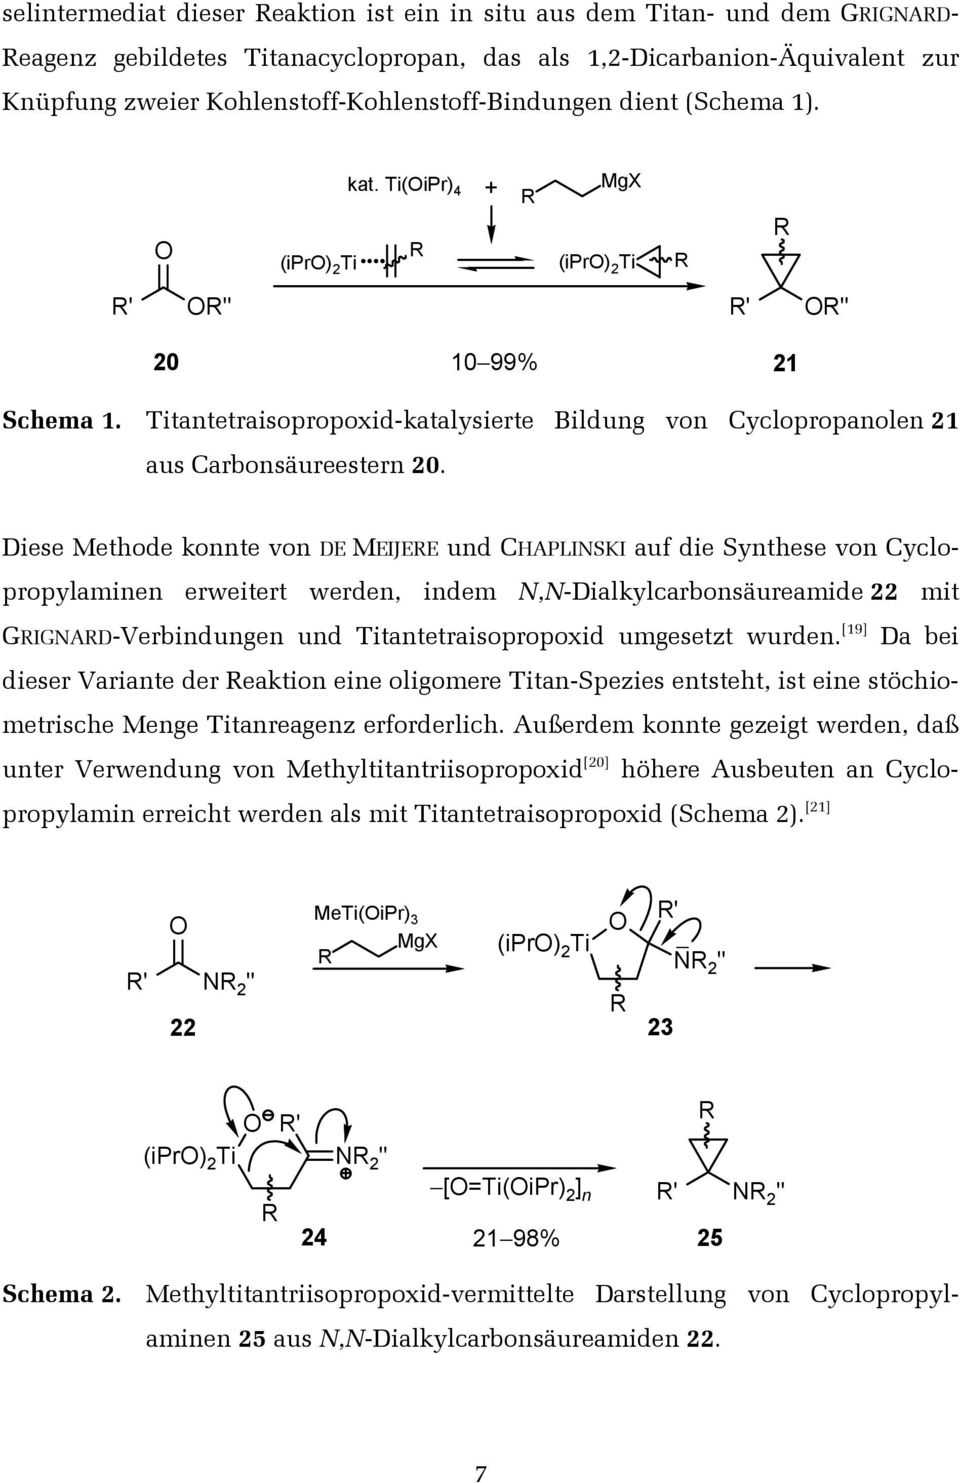 Titantetraisopropoxid-katalysierte Bildung von Cyclopropanolen 21 aus Carbonsäureestern 20.